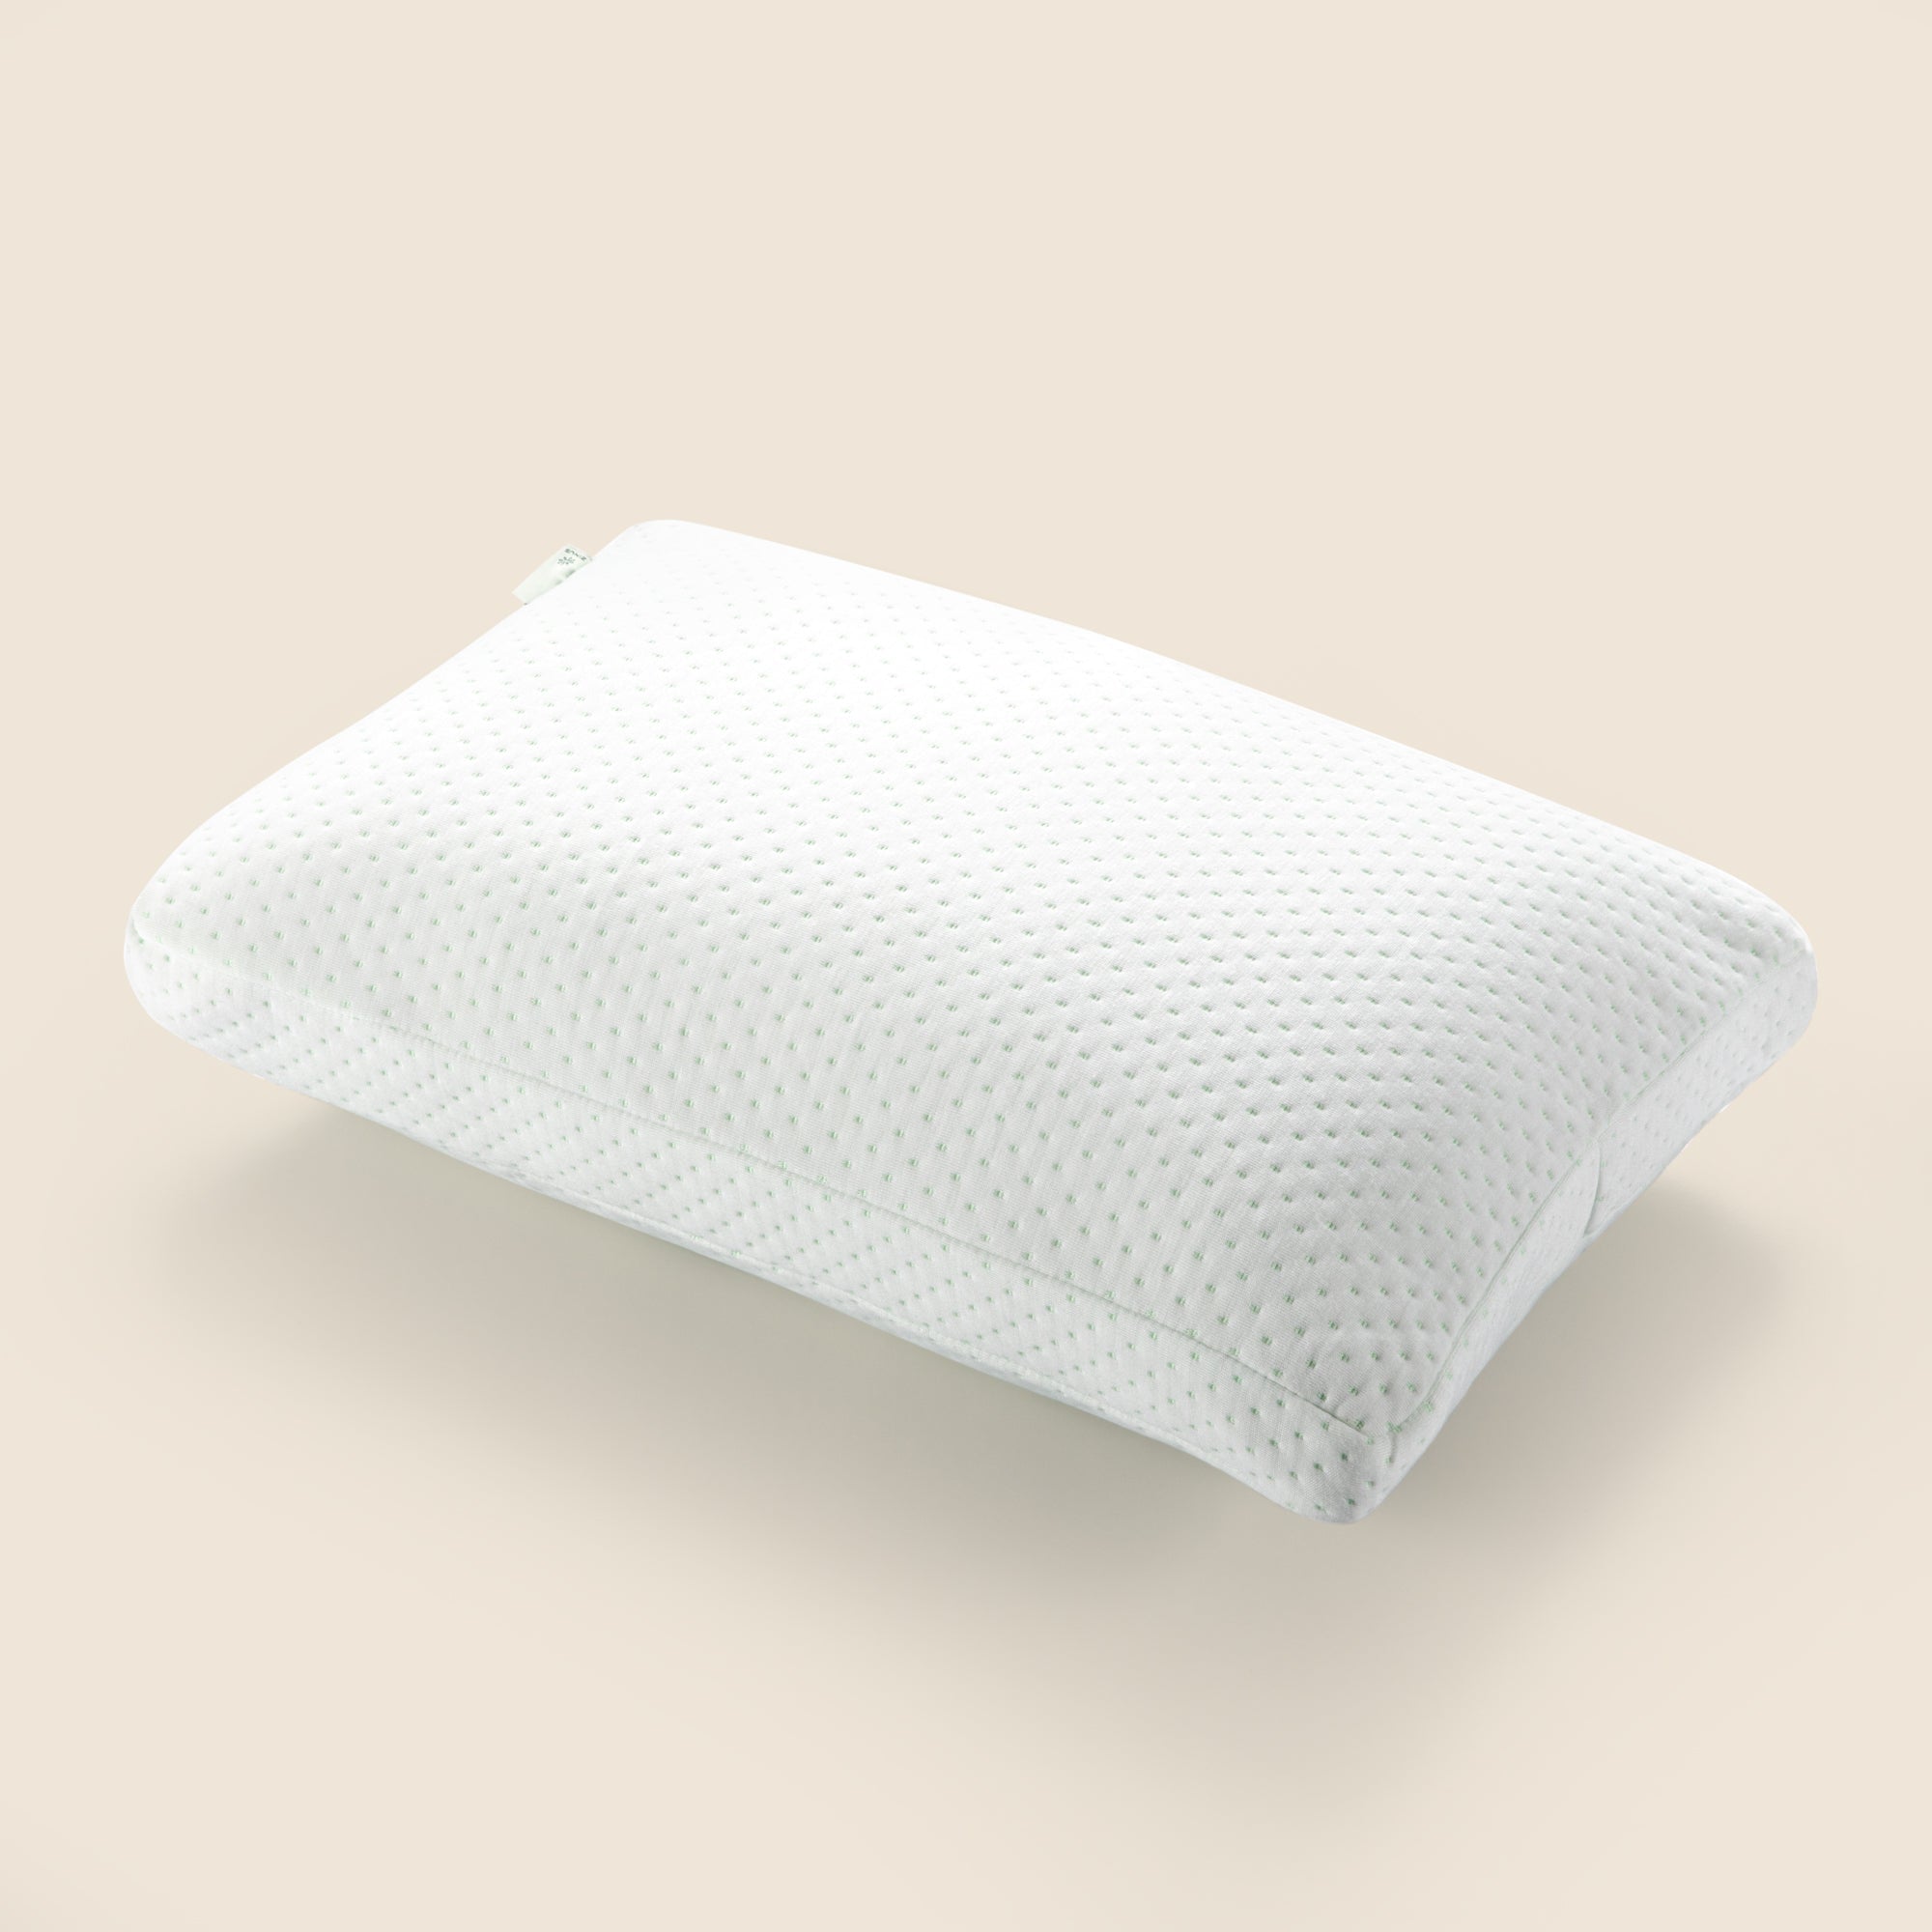 Dual 枕 ウレタンフォーム 低反発 15cm ホワイト